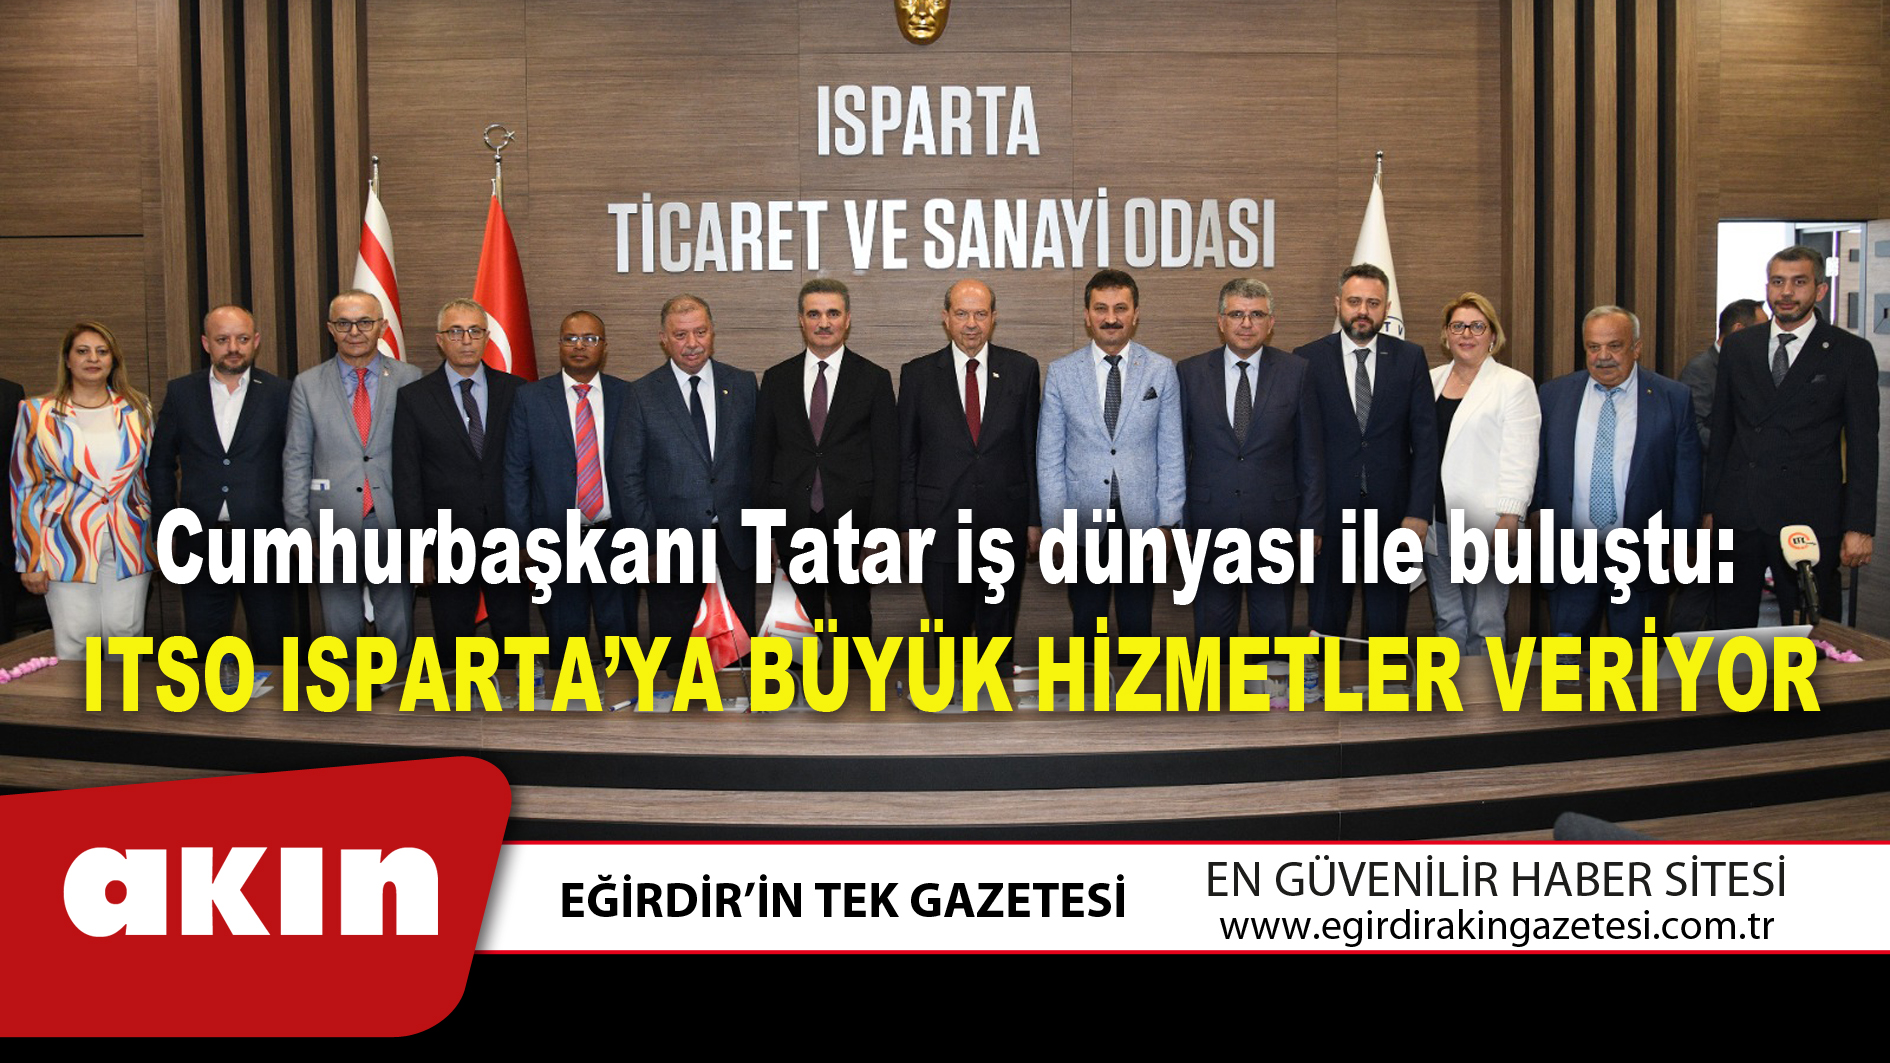 Cumhurbaşkanı Tatar iş dünyası ile buluştu: ITSO ISPARTA’YA BÜYÜK HİZMETLER VERİYOR